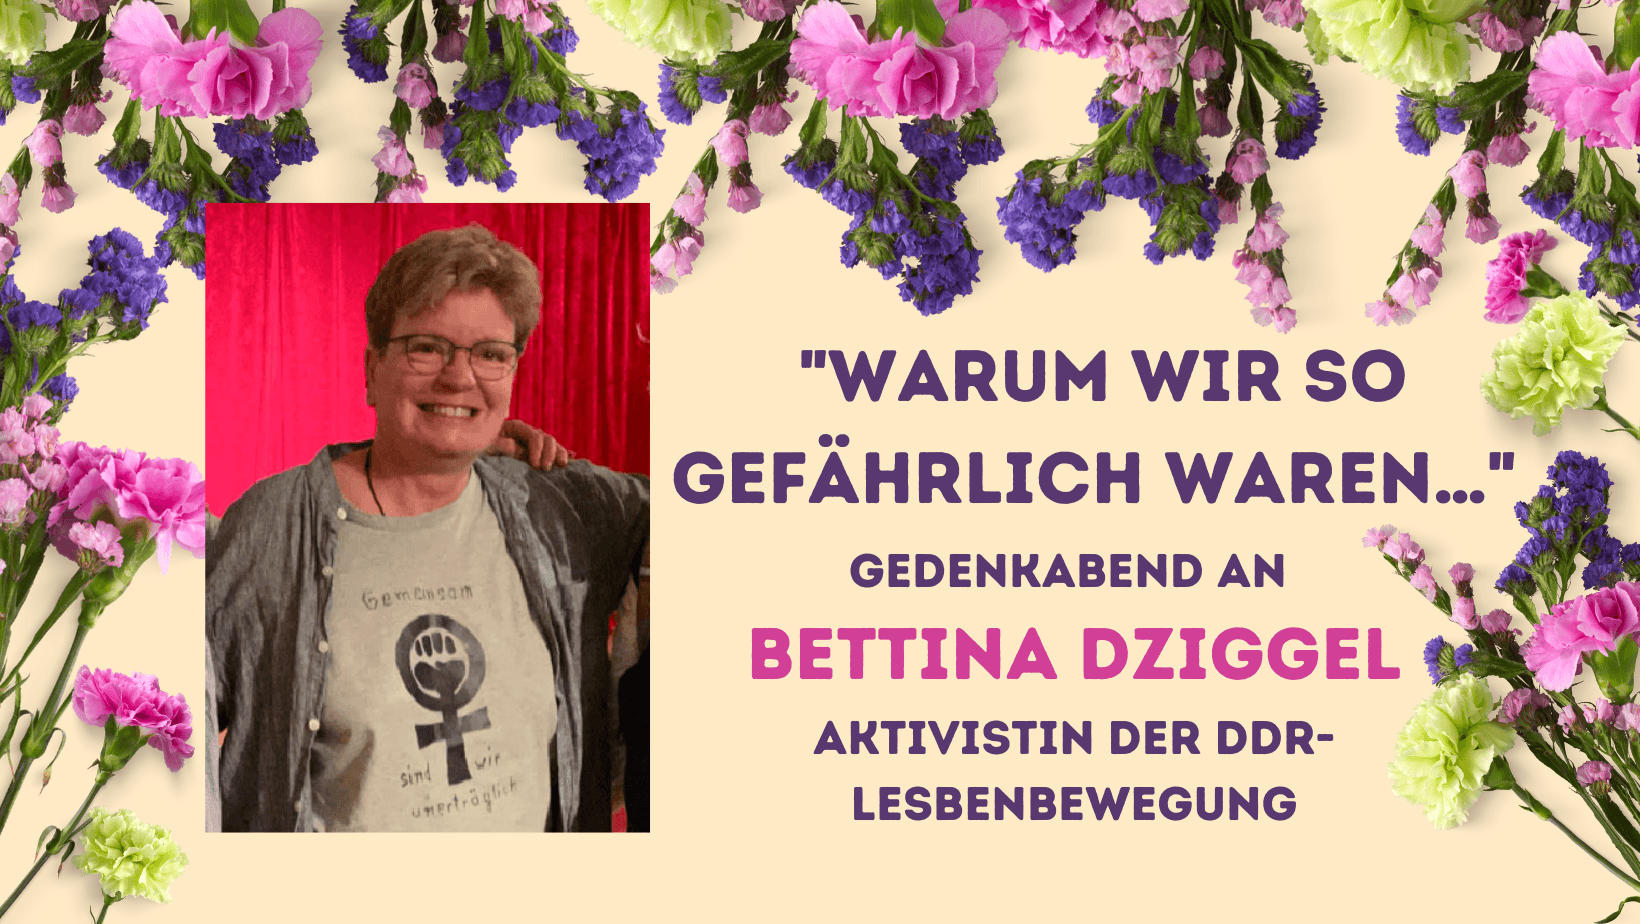 Gedenkabend an Bettina Dziggel - Aktivistin der DDR-Lesbenbewegung